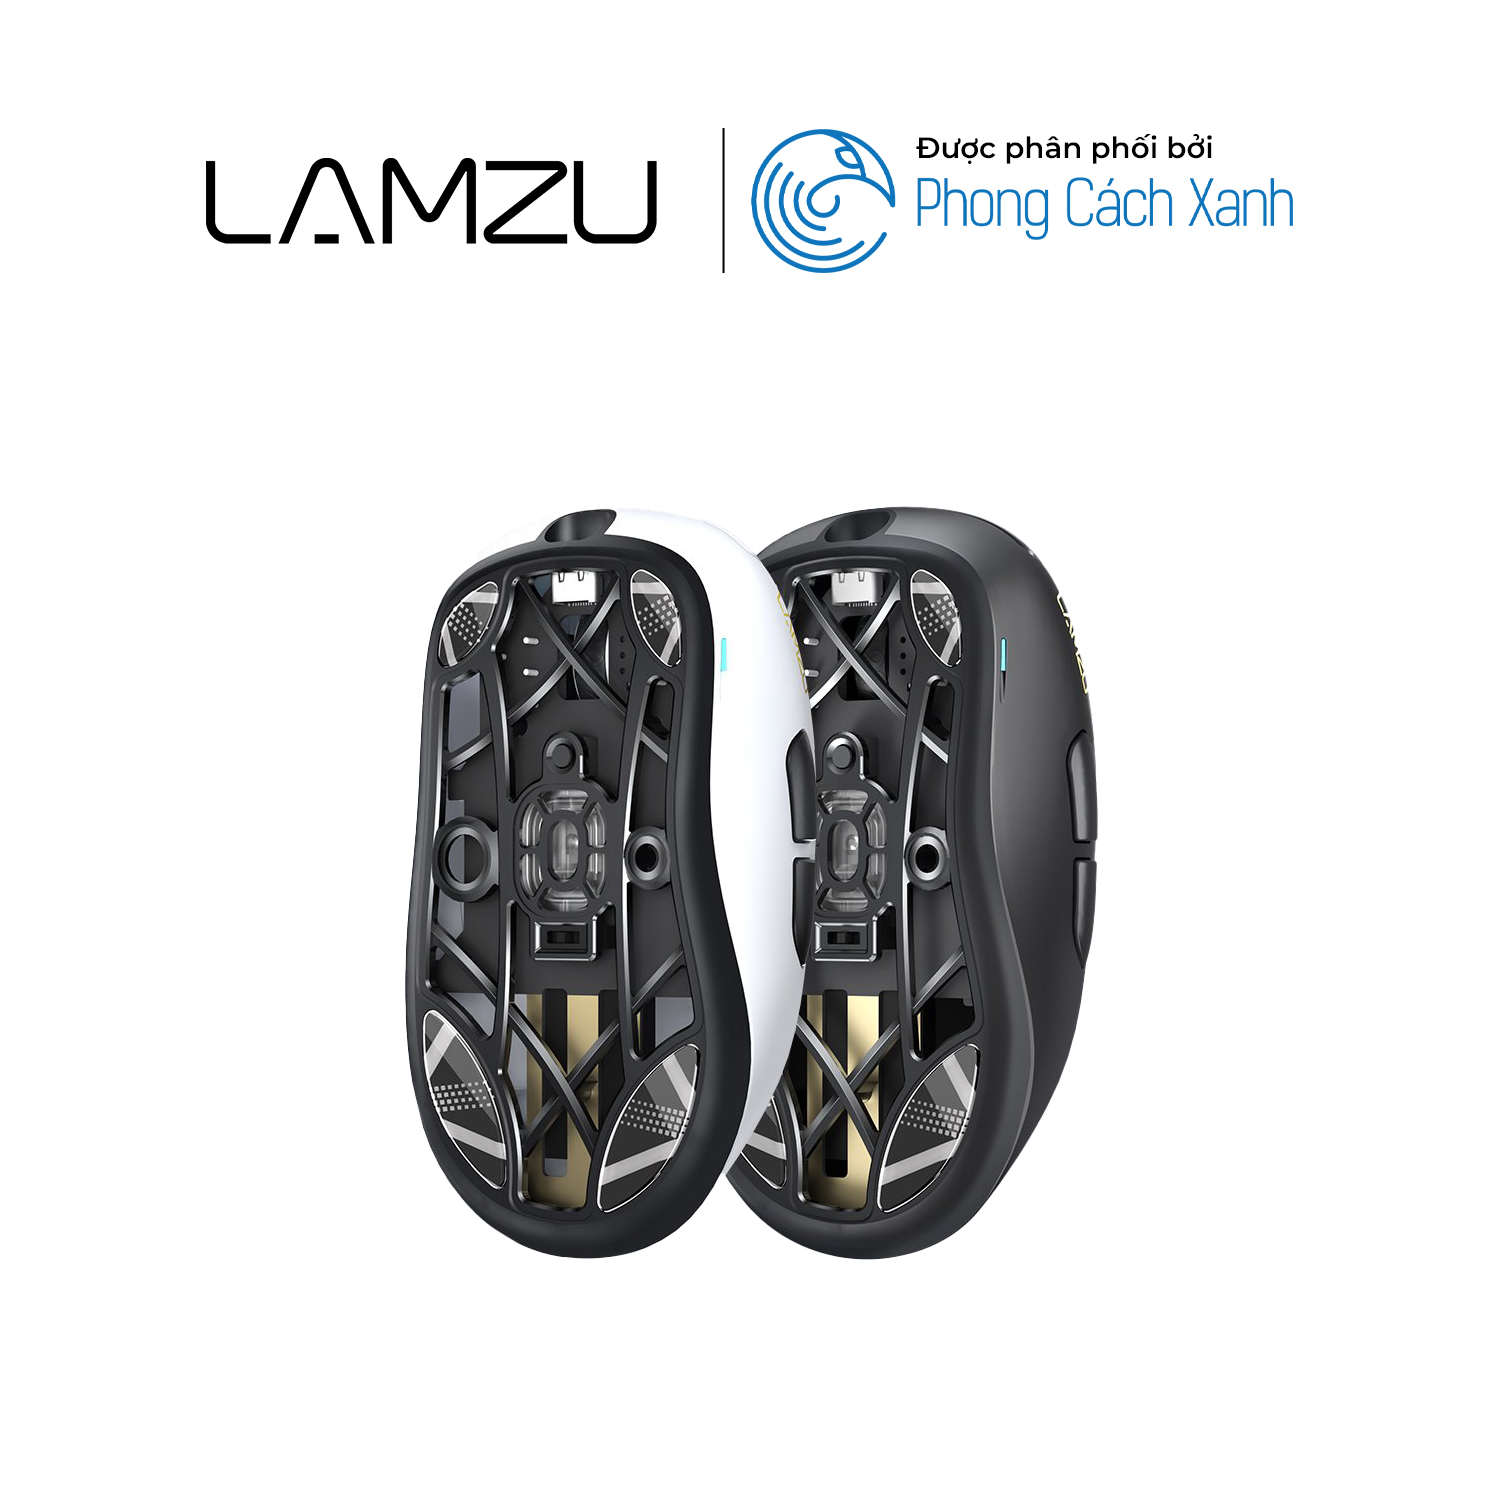 Feet chuột thủy tinh Lamzu cho Lamzu Thorn - Hàng chính hãng